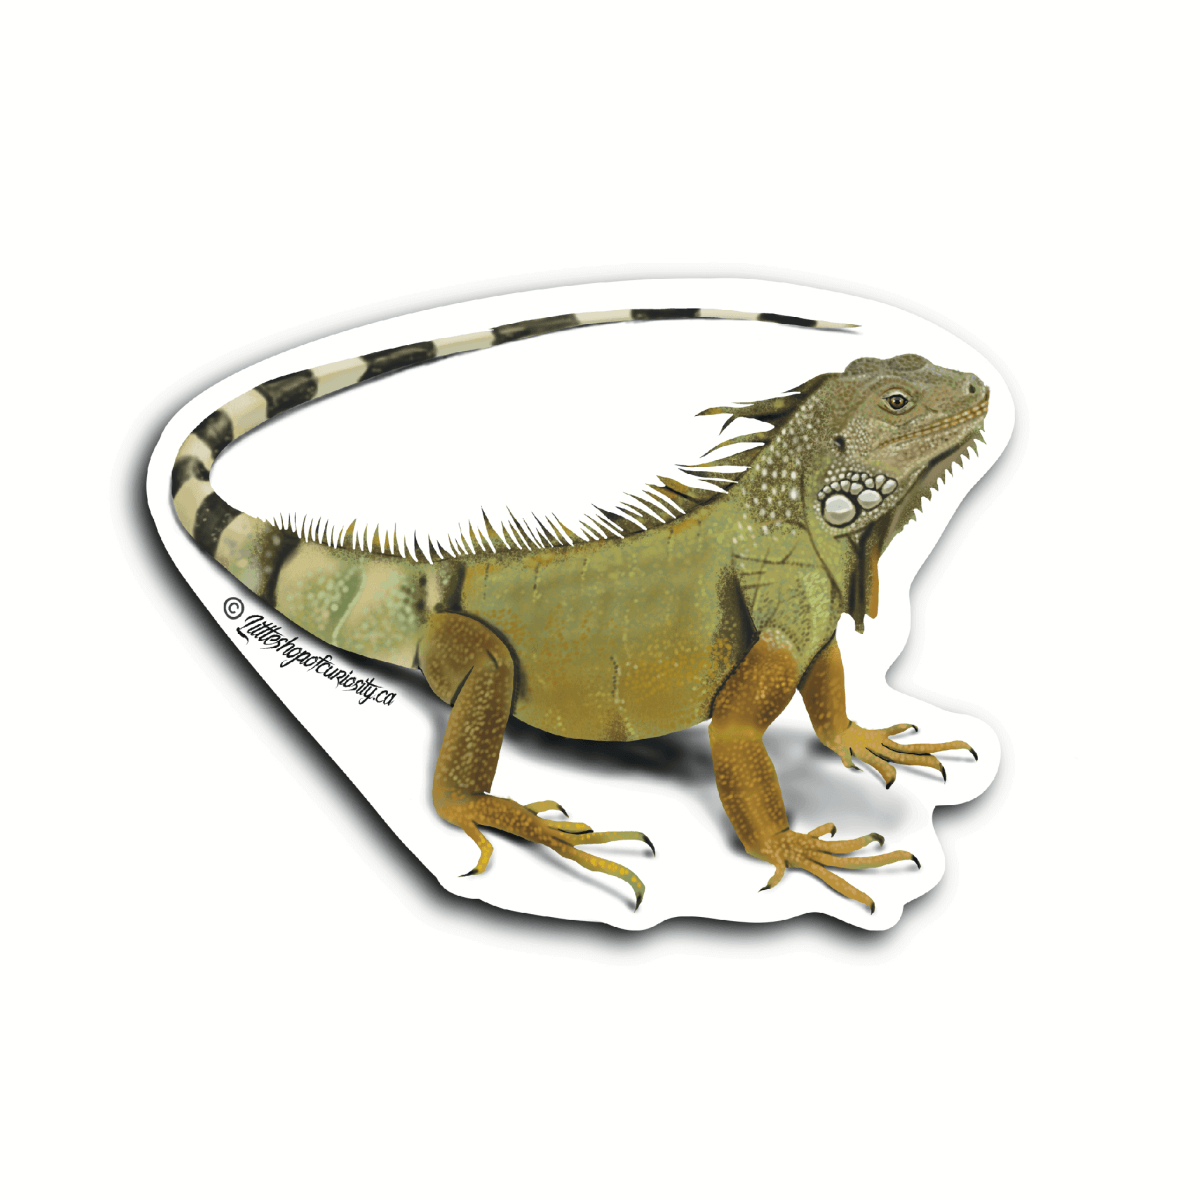 Green Iguana Sticker - Colour Sticker - Little Shop of Curiosity